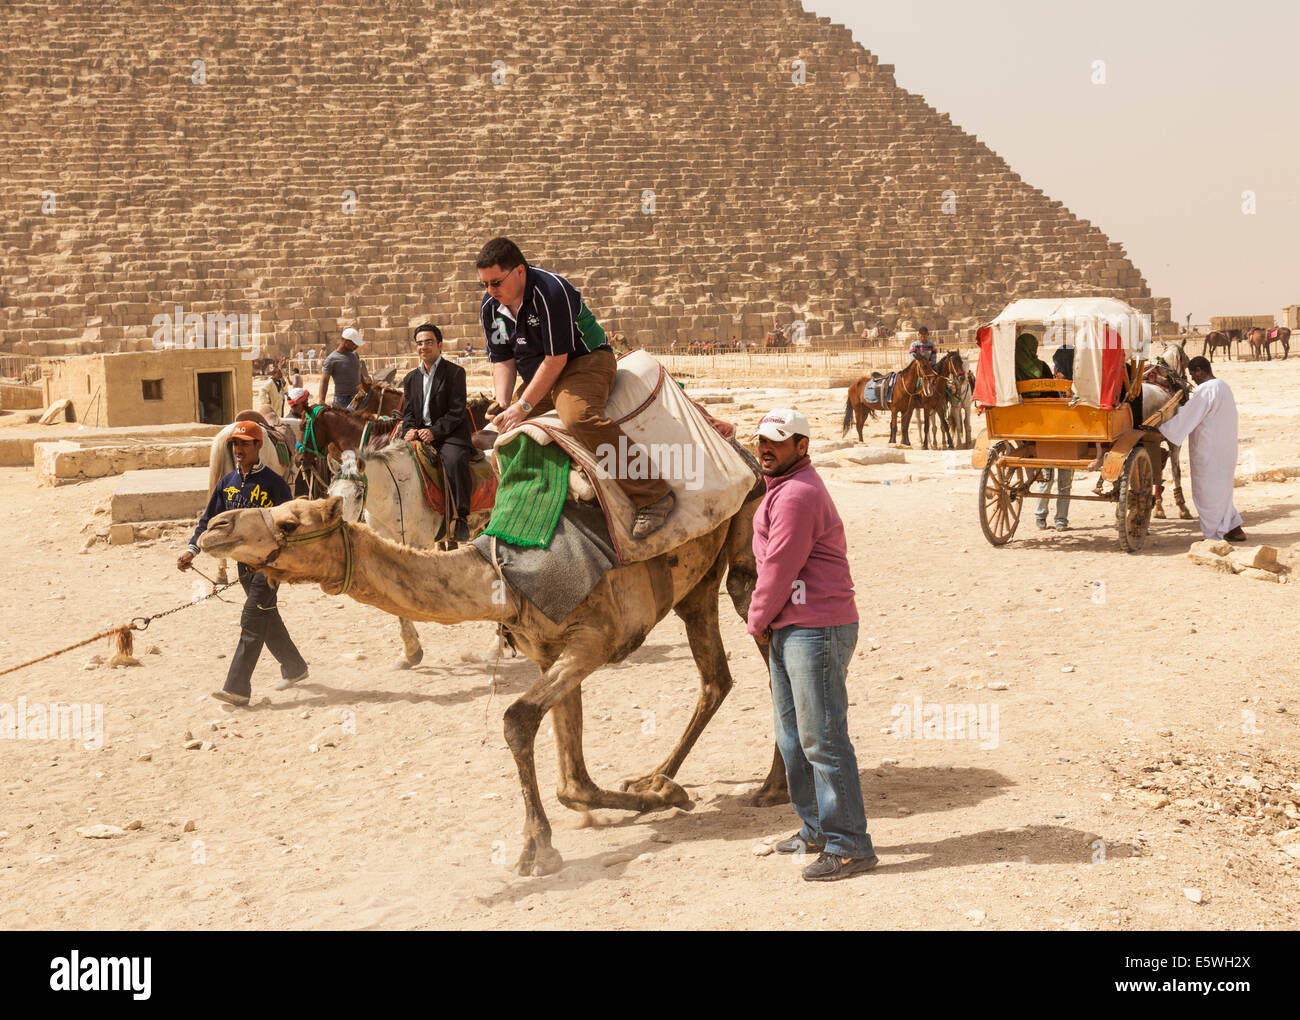 Pyramiden, Ägypten - Touristen auf einem Kamel mit Pferd und Wagen warten auf Touristen durch die große Pyramide von Gizeh Stockfoto